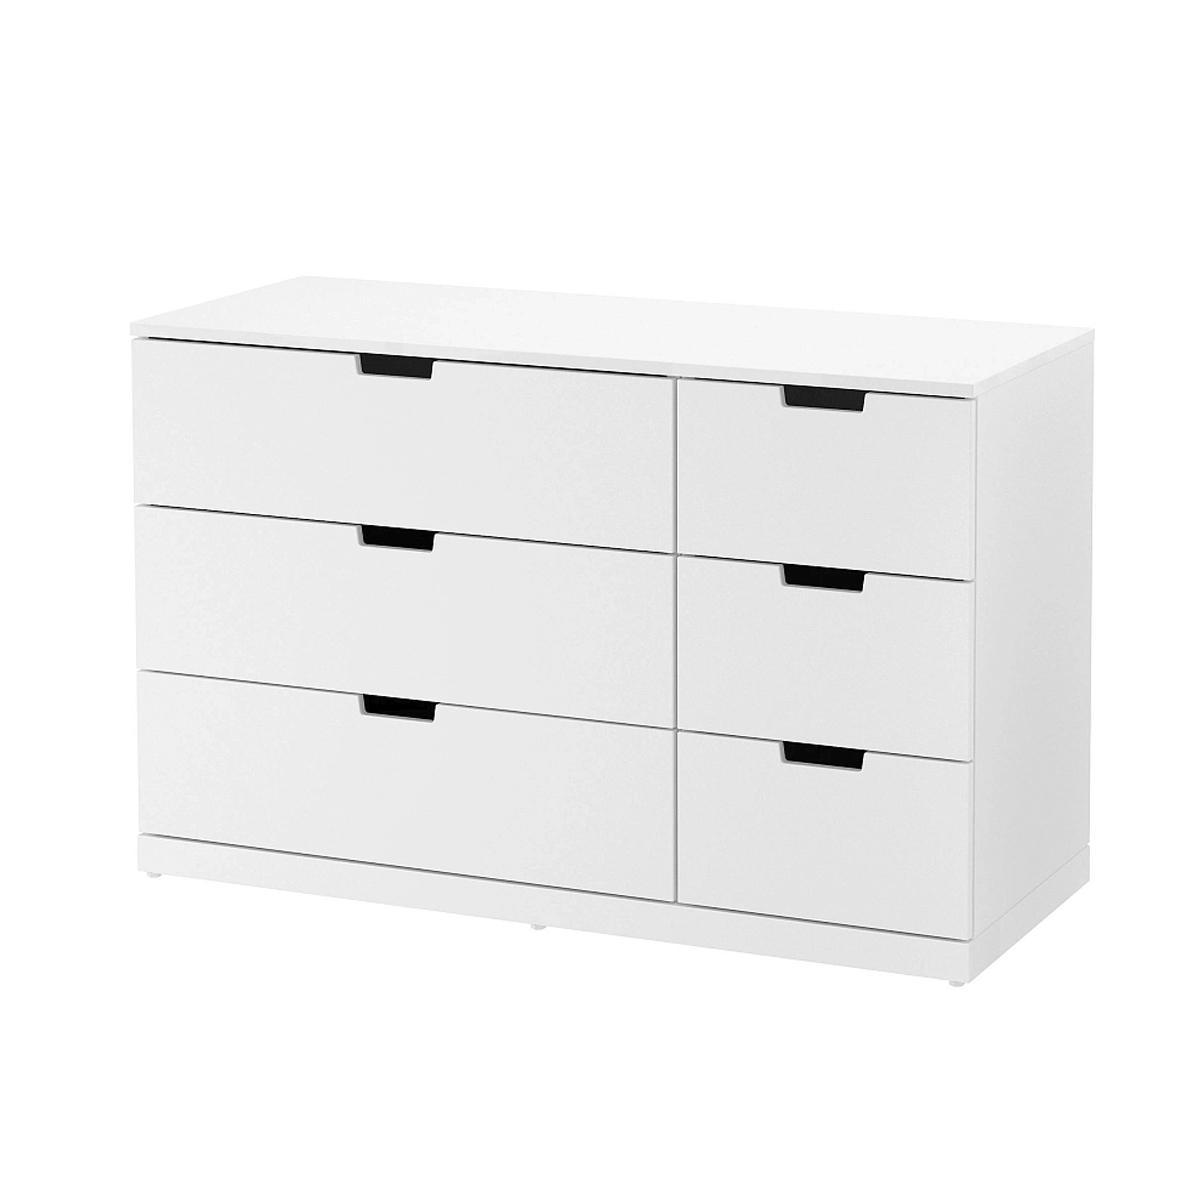  Комод Нордли white ИКЕА (IKEA) изображение товара